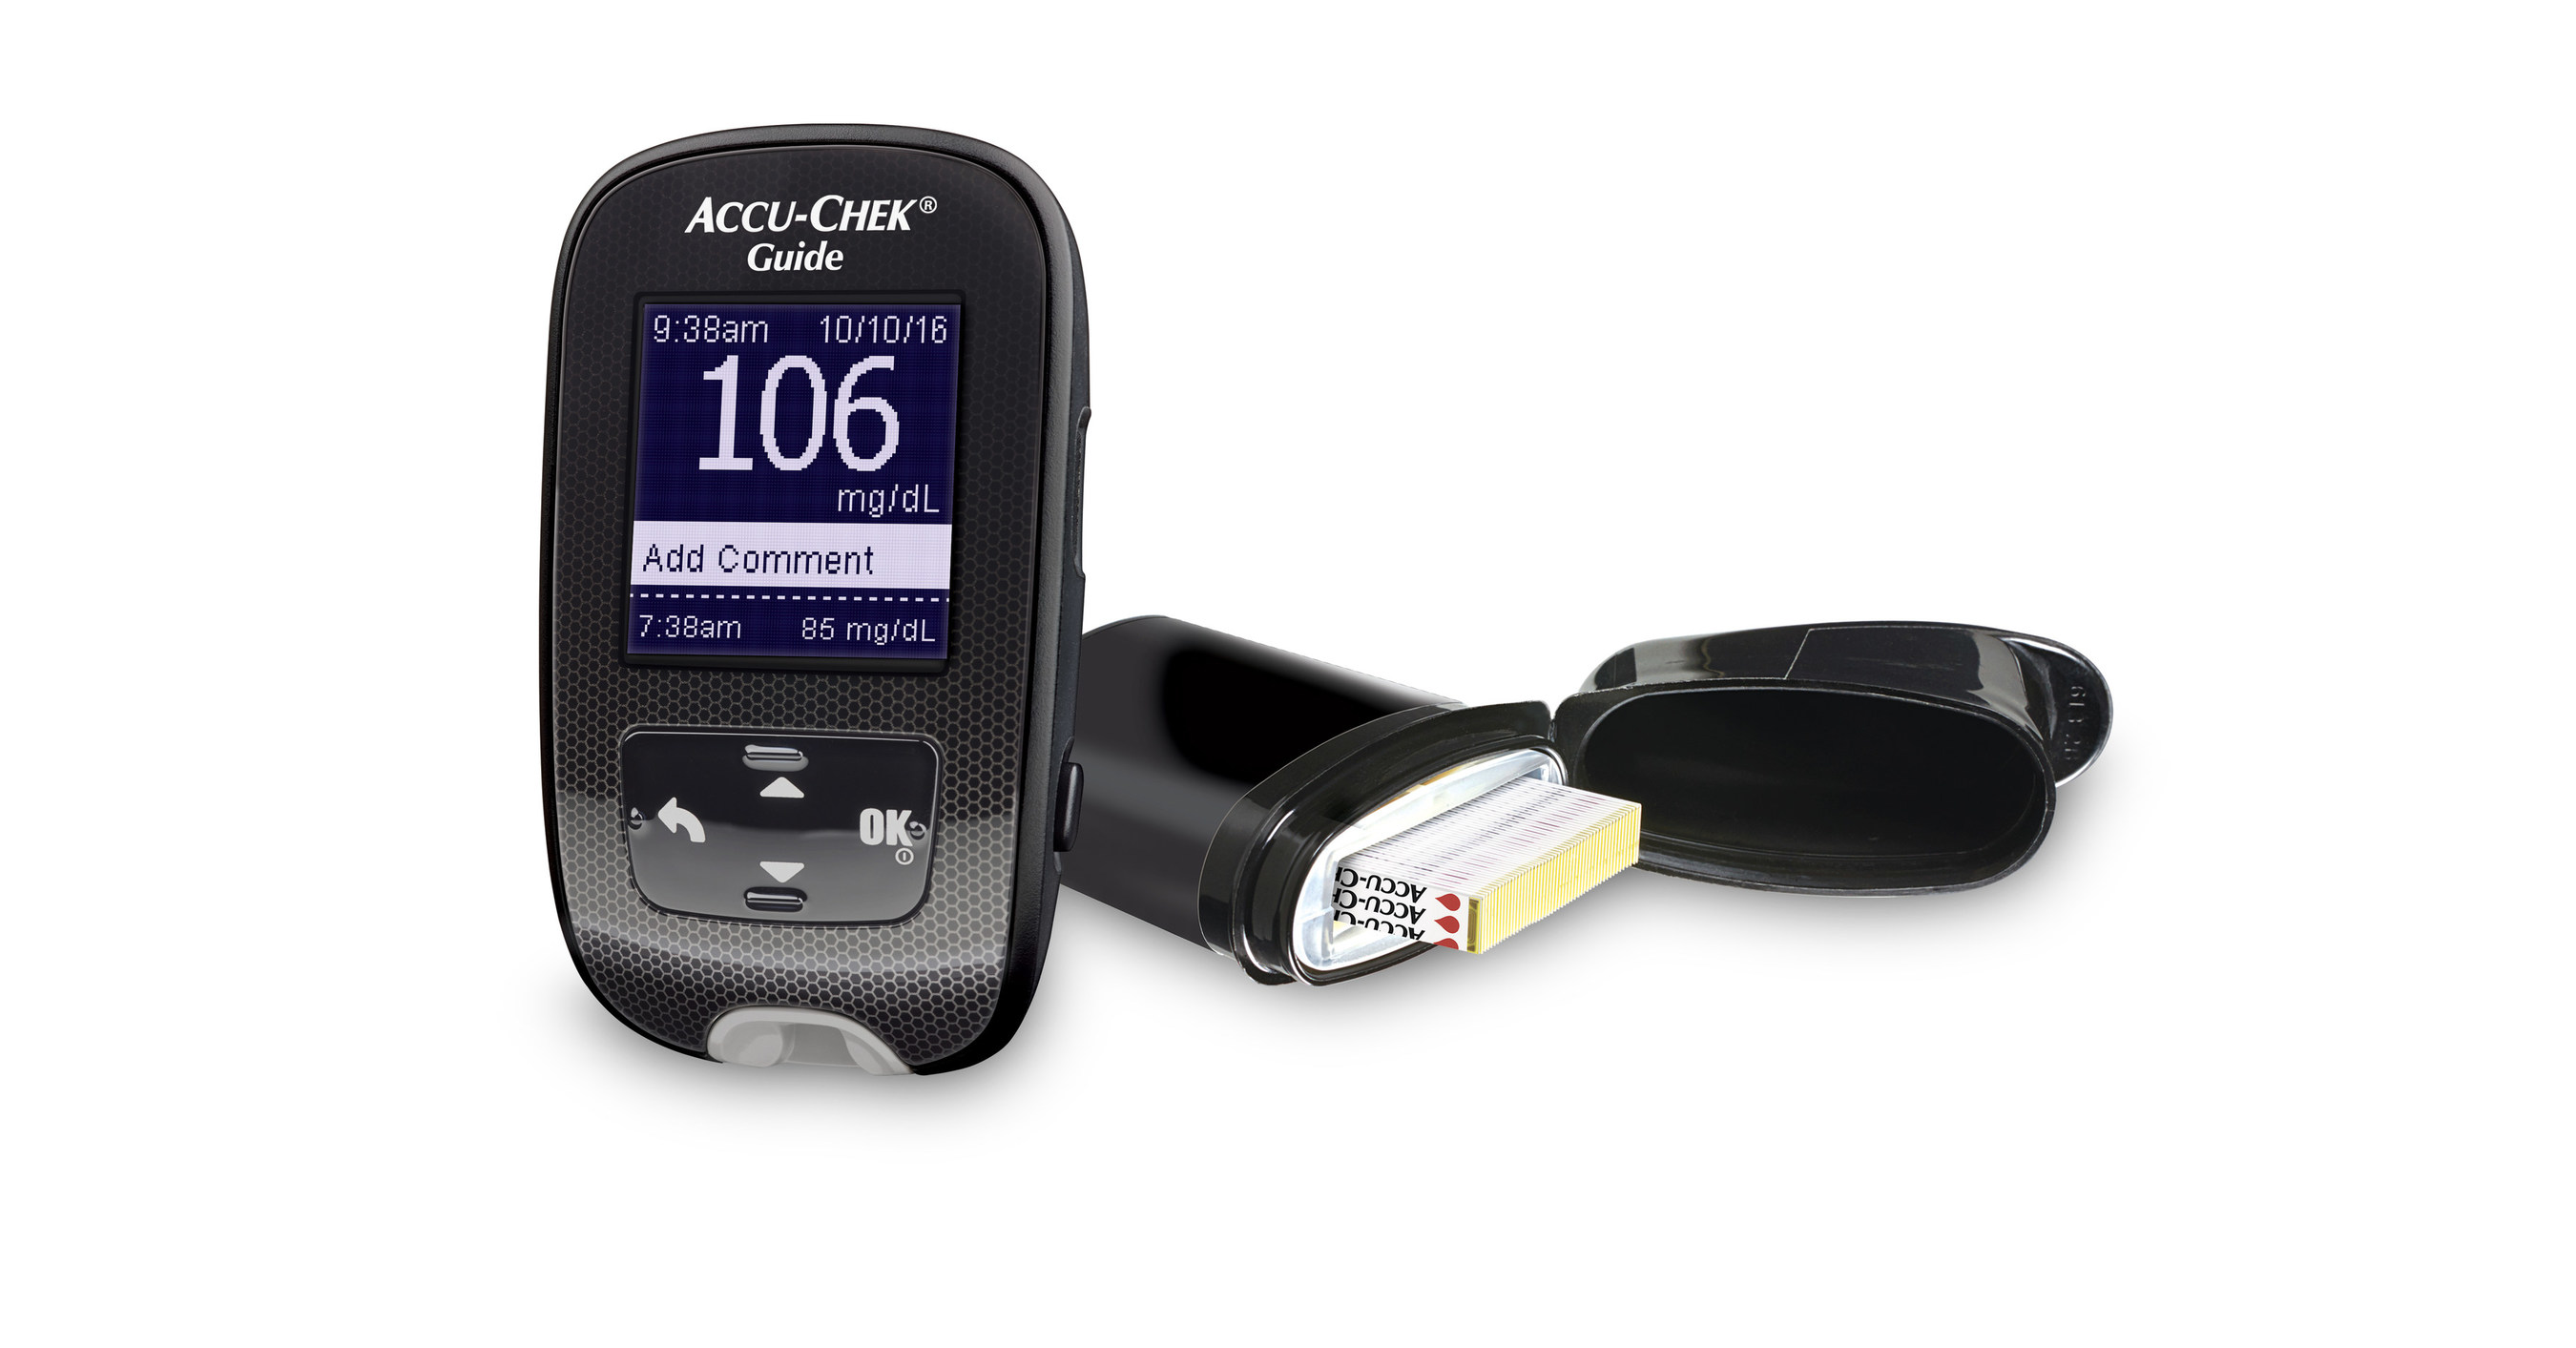 Accu-Chek Guide Me Blood Glucose Meter Testing Device – A Biomedical Service